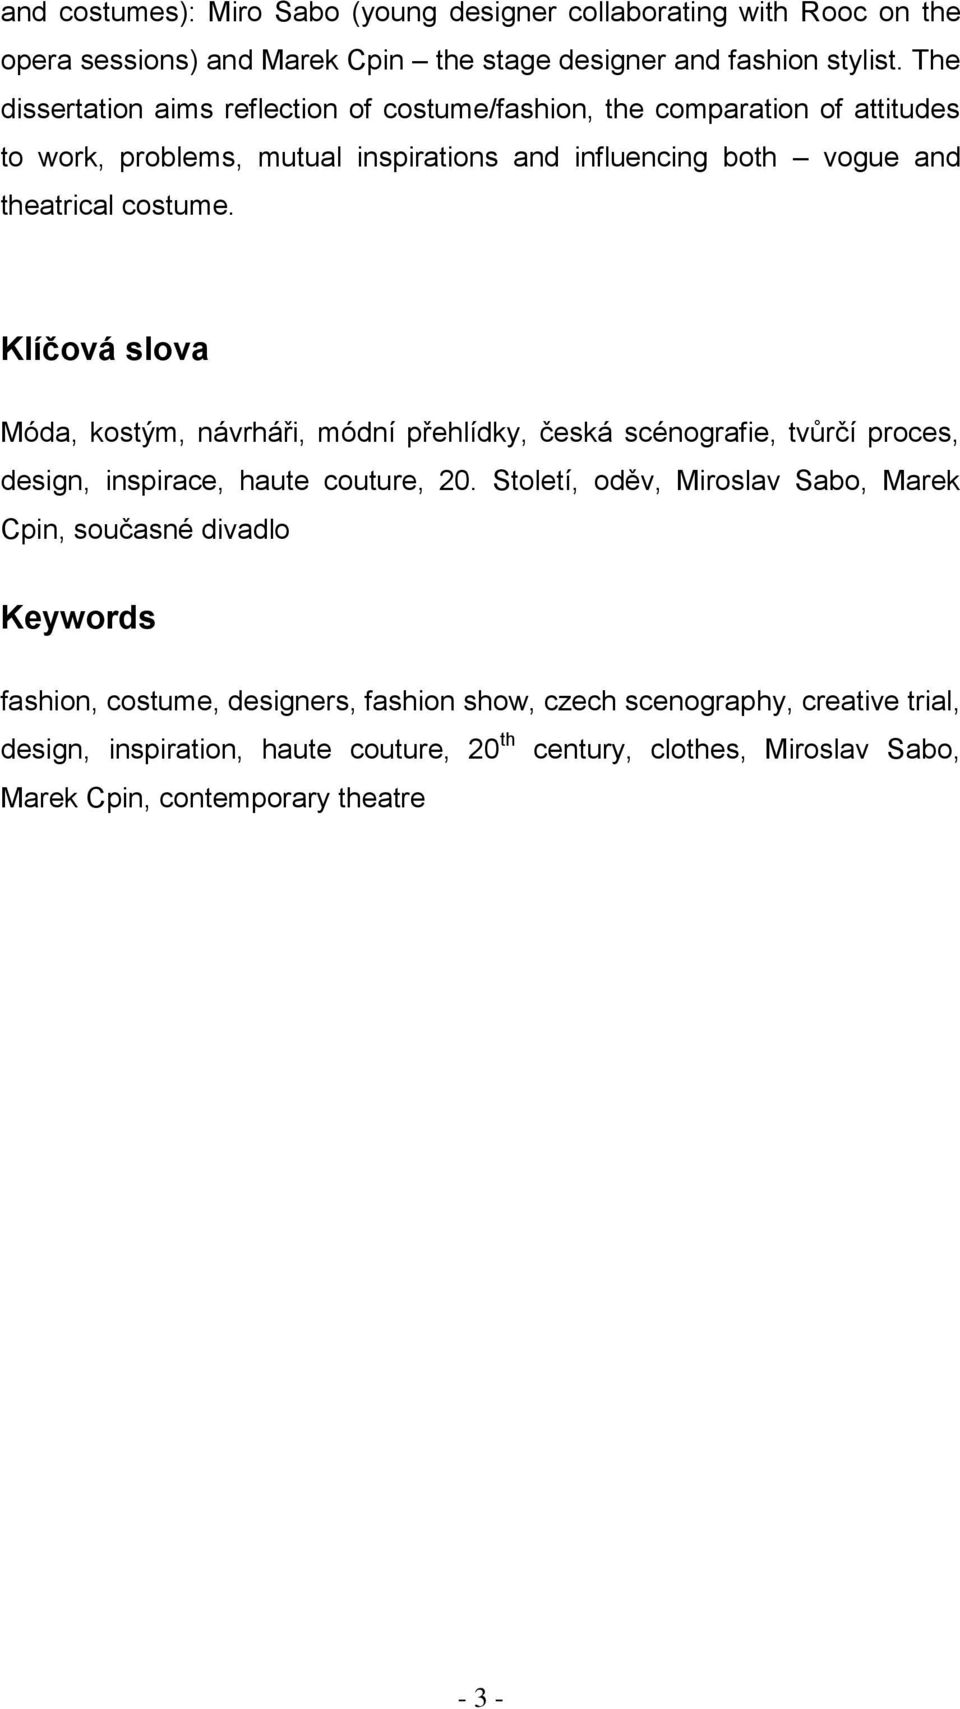 Fenomén módy a módního designu v současné scénografii - PDF Stažení zdarma